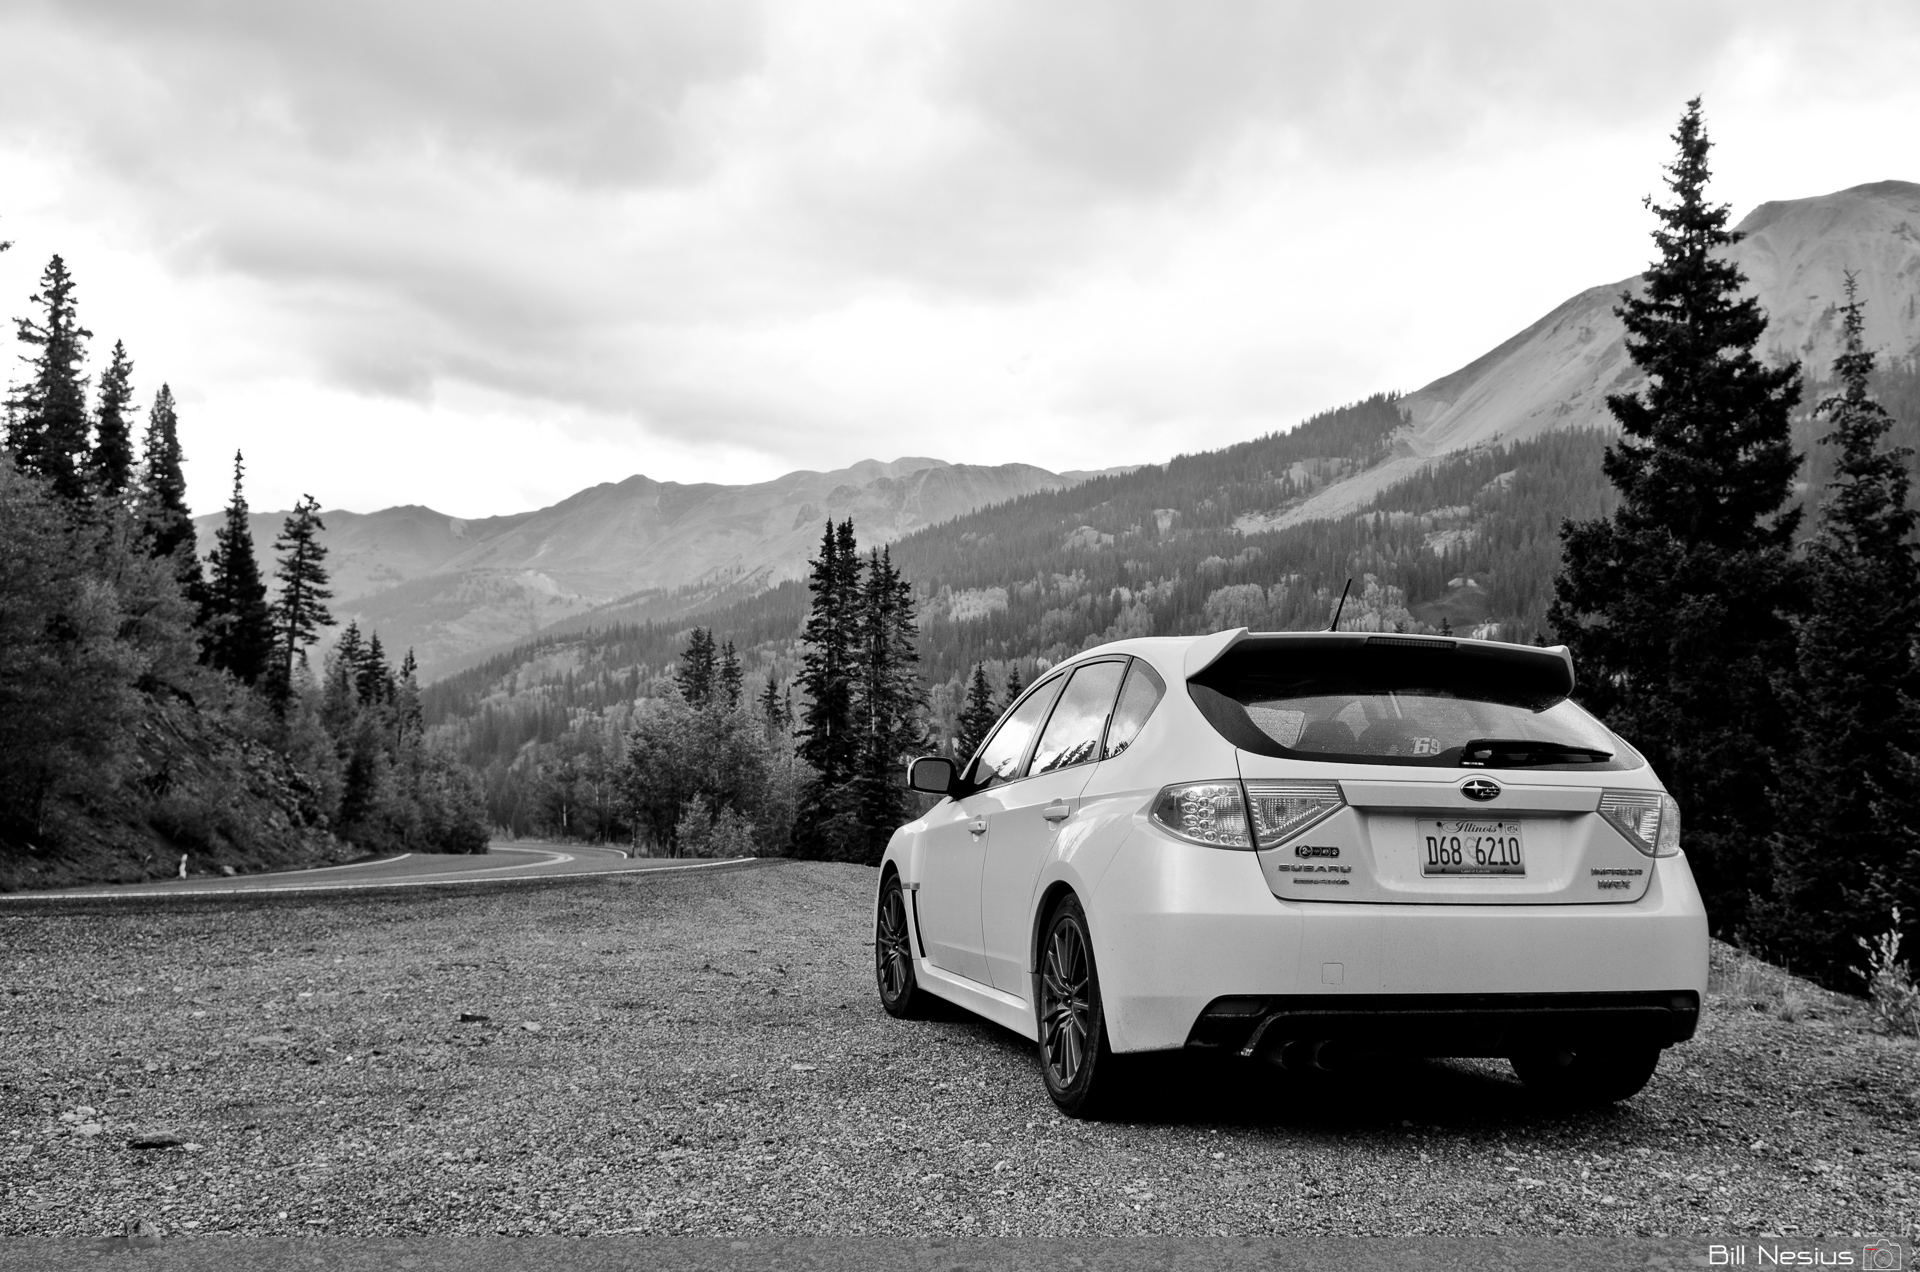 Subaru WRX Colorado Hwy 550